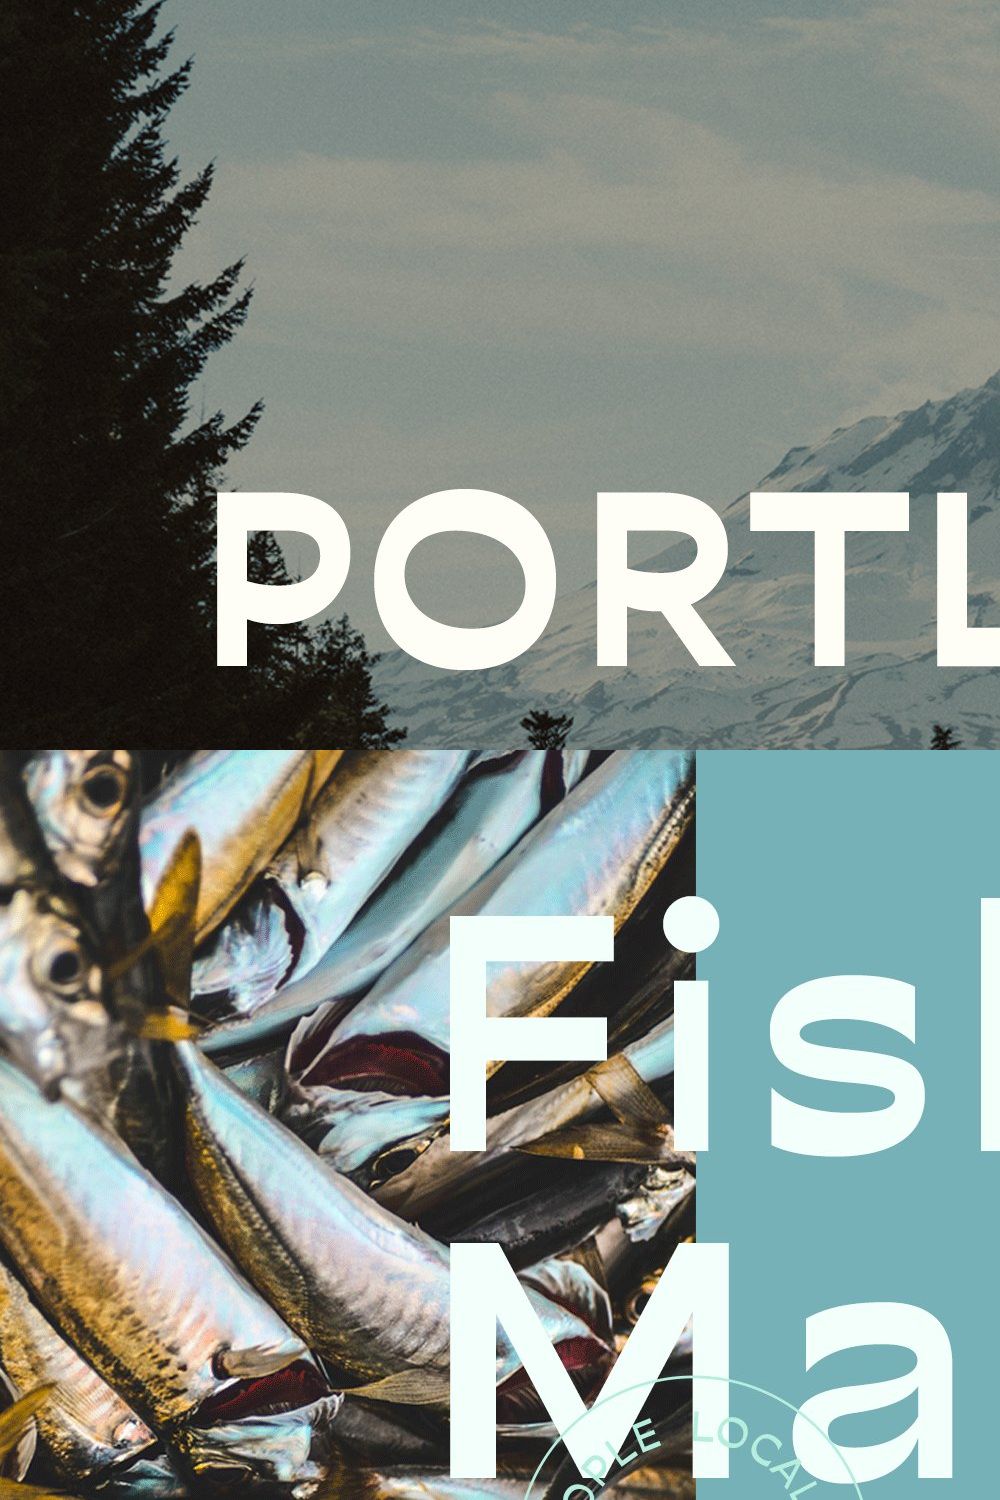 Portland Sans Serif pinterest preview image.